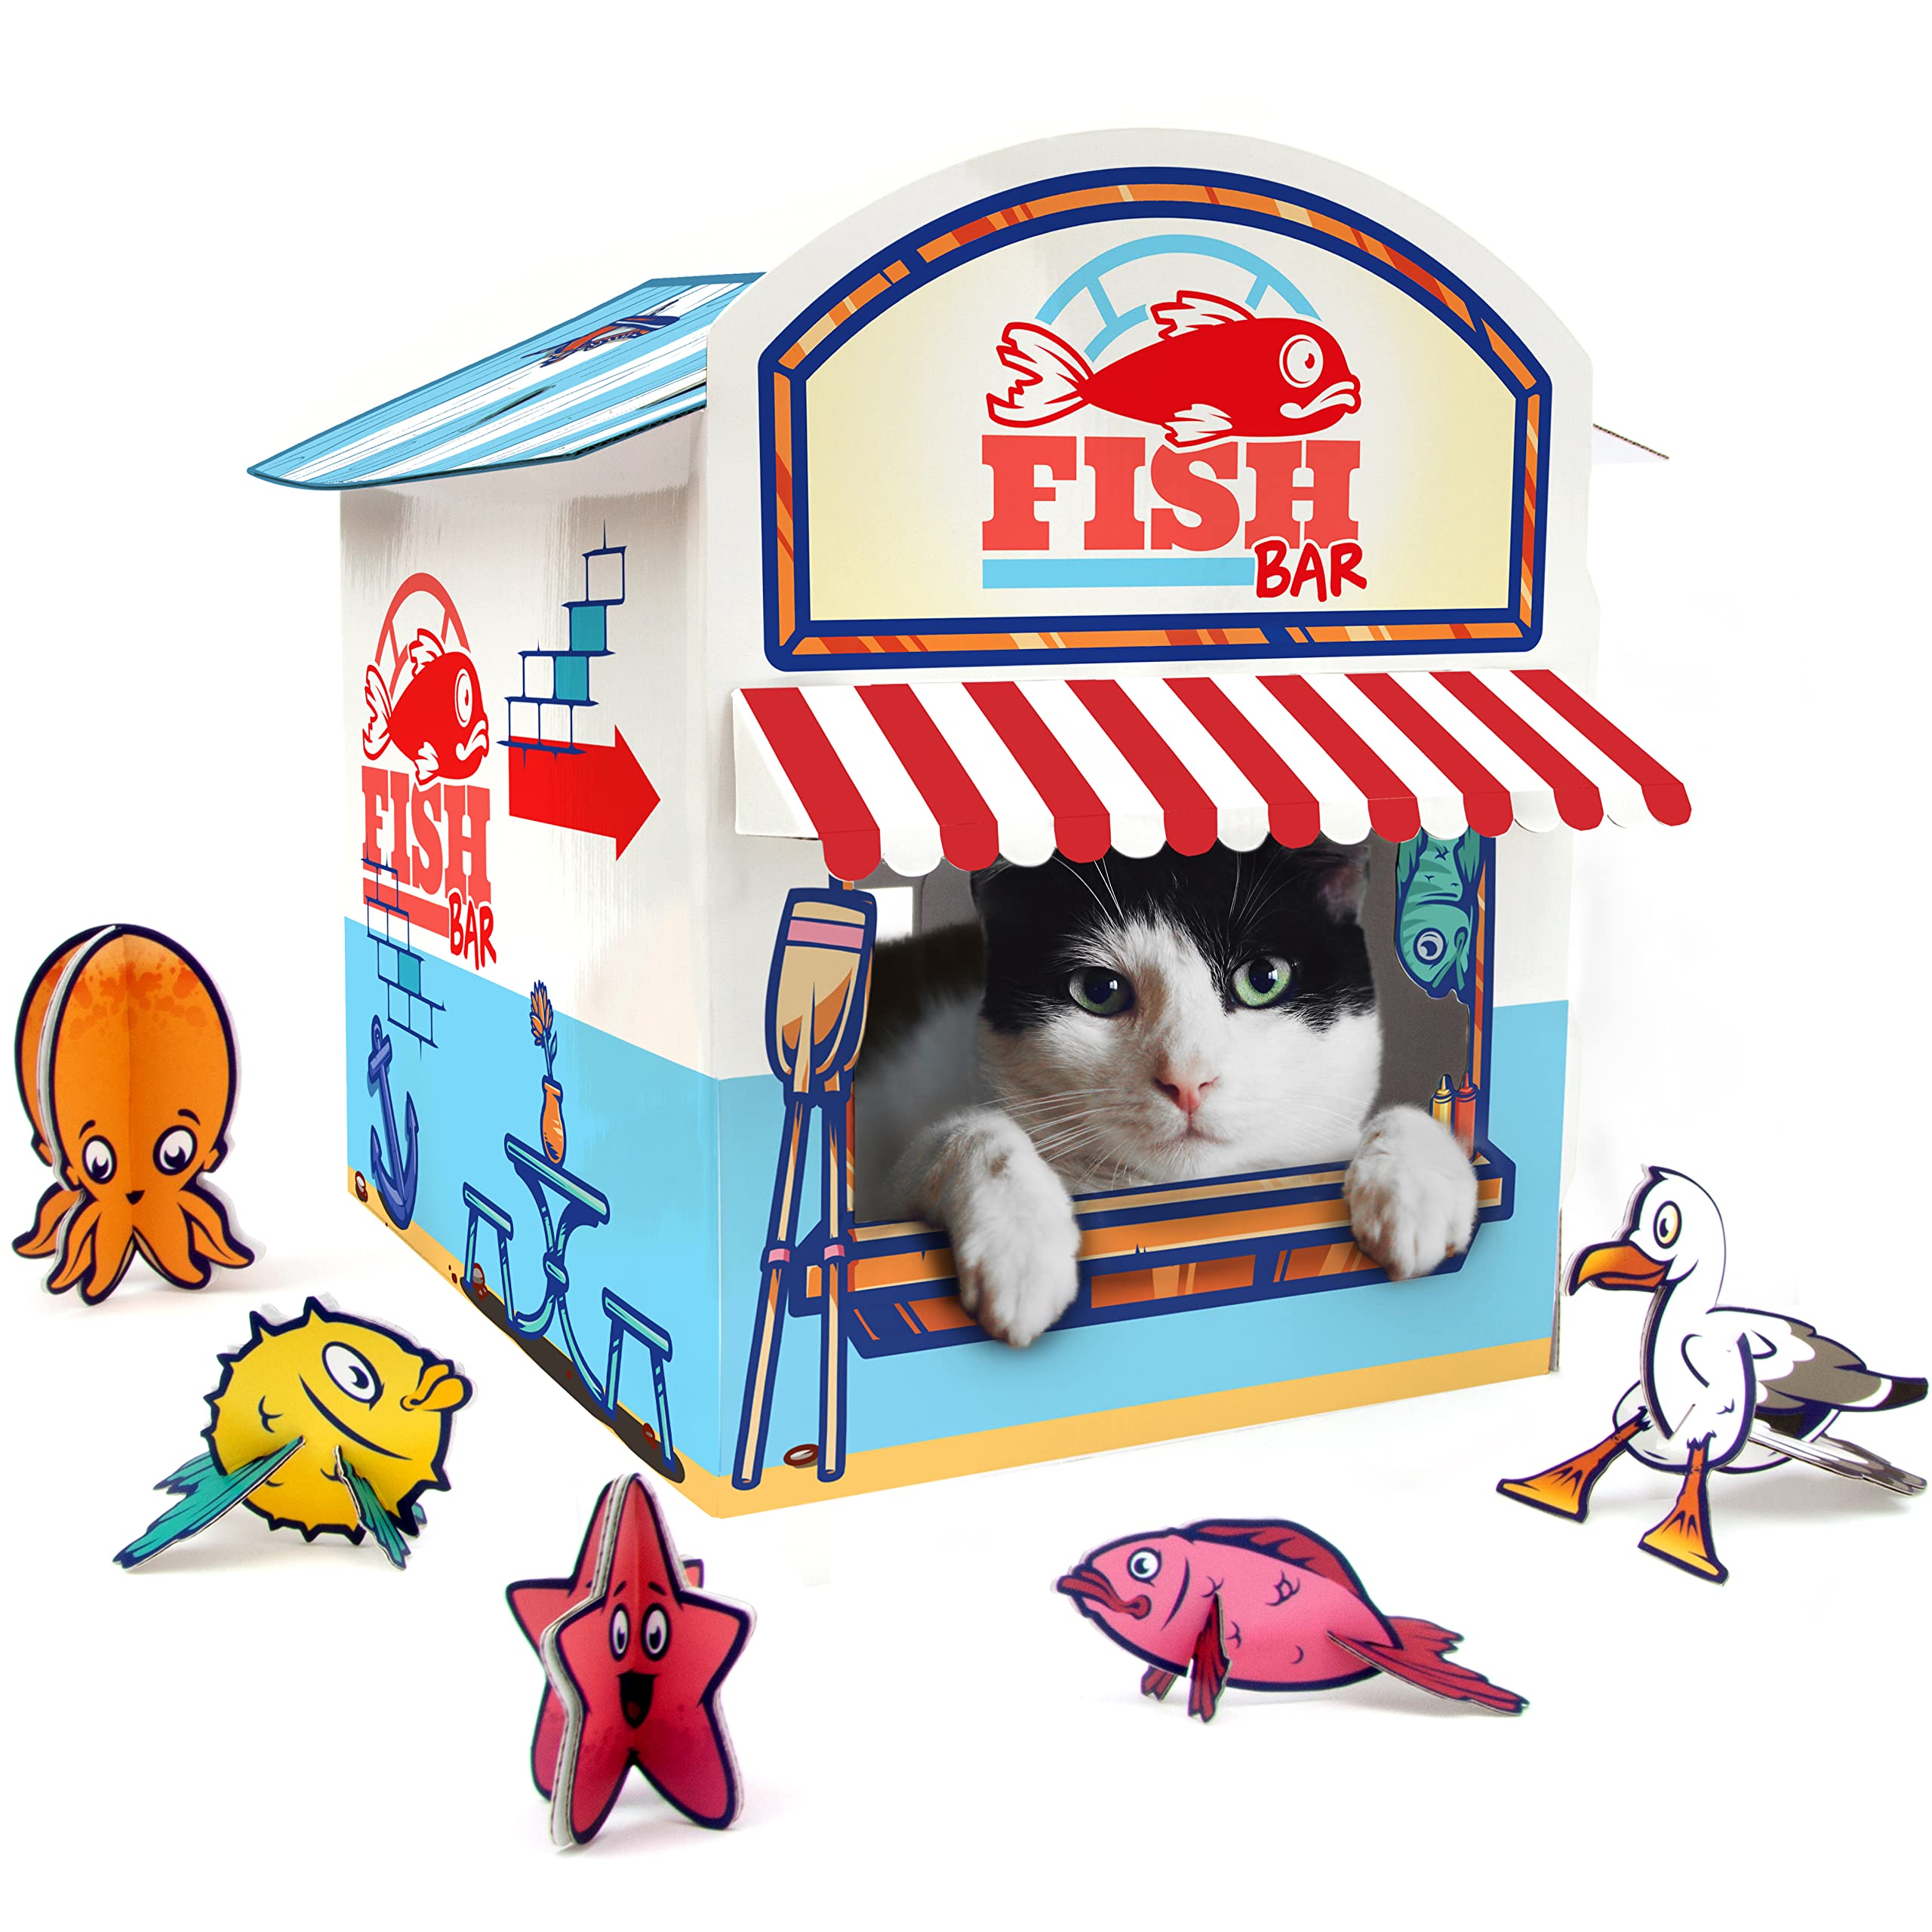 Suck UK Katzenkiosk-Spielhaus | Katzenspielzeug | Katzenhaus aus Pappe | Katzenzubehör | Katzenspielhaus | Papphaus | Kätzchenzubehör | Katzenhöhle | Katzenversteck mit 3D-Spielzeug aus Pappe